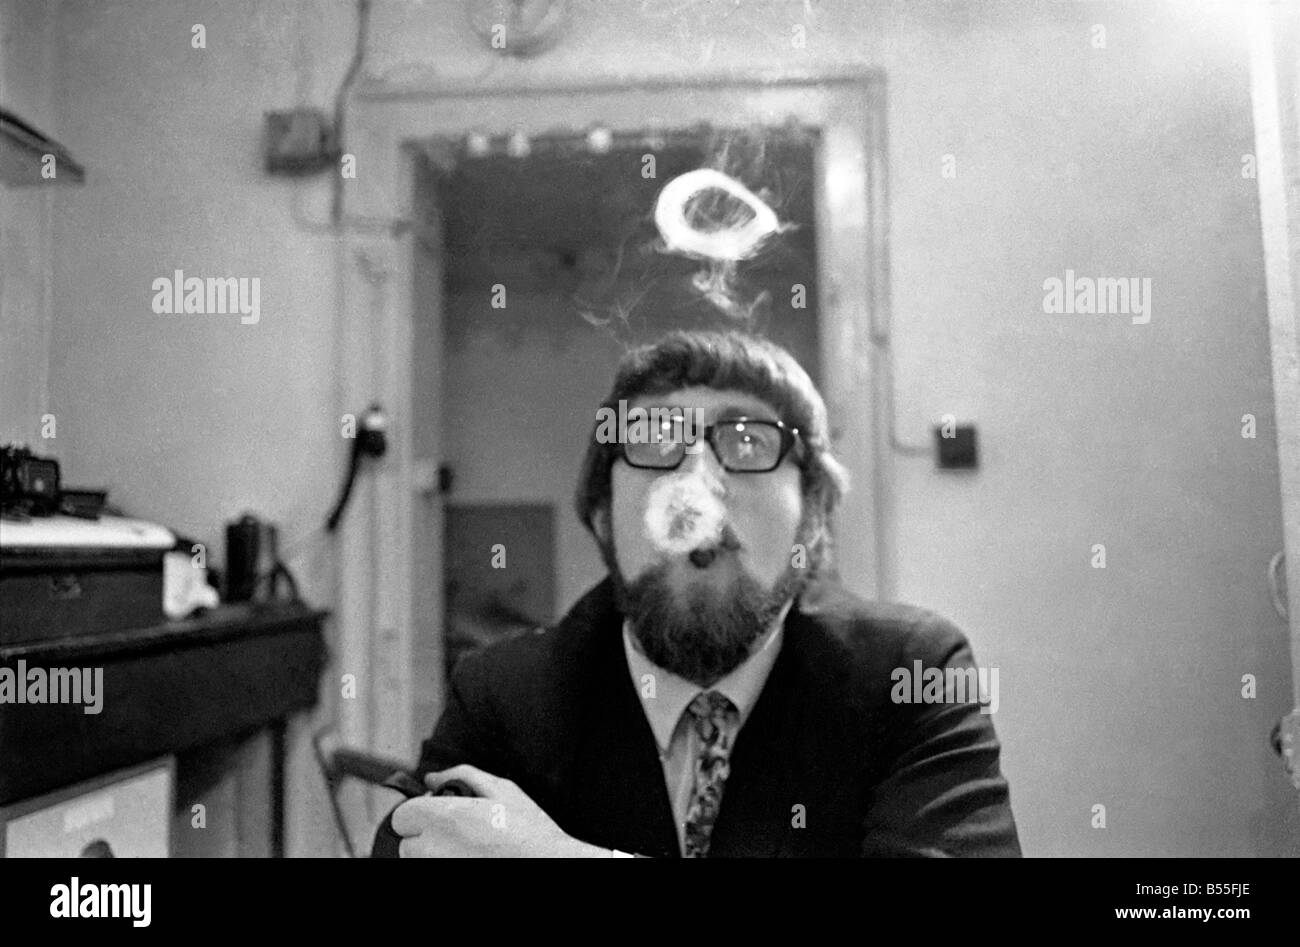 Un homme fume une cigarette soufflant des ronds de fumée. Novembre 1969 &# 13 ;&# 10;Z12004-007 Banque D'Images